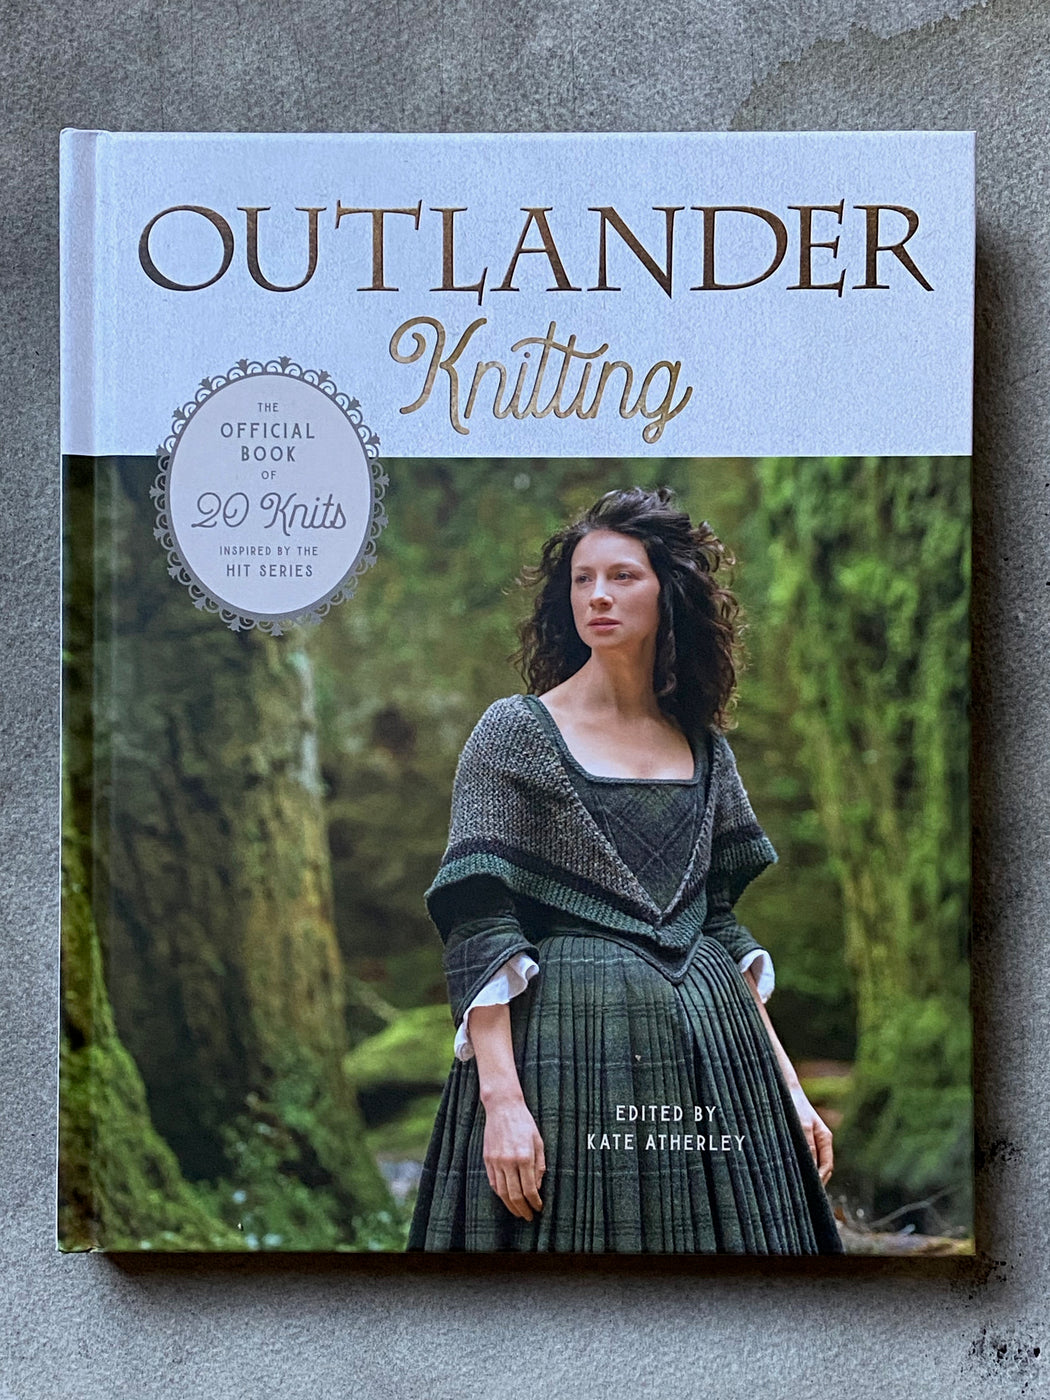 "Outlander Knitting"